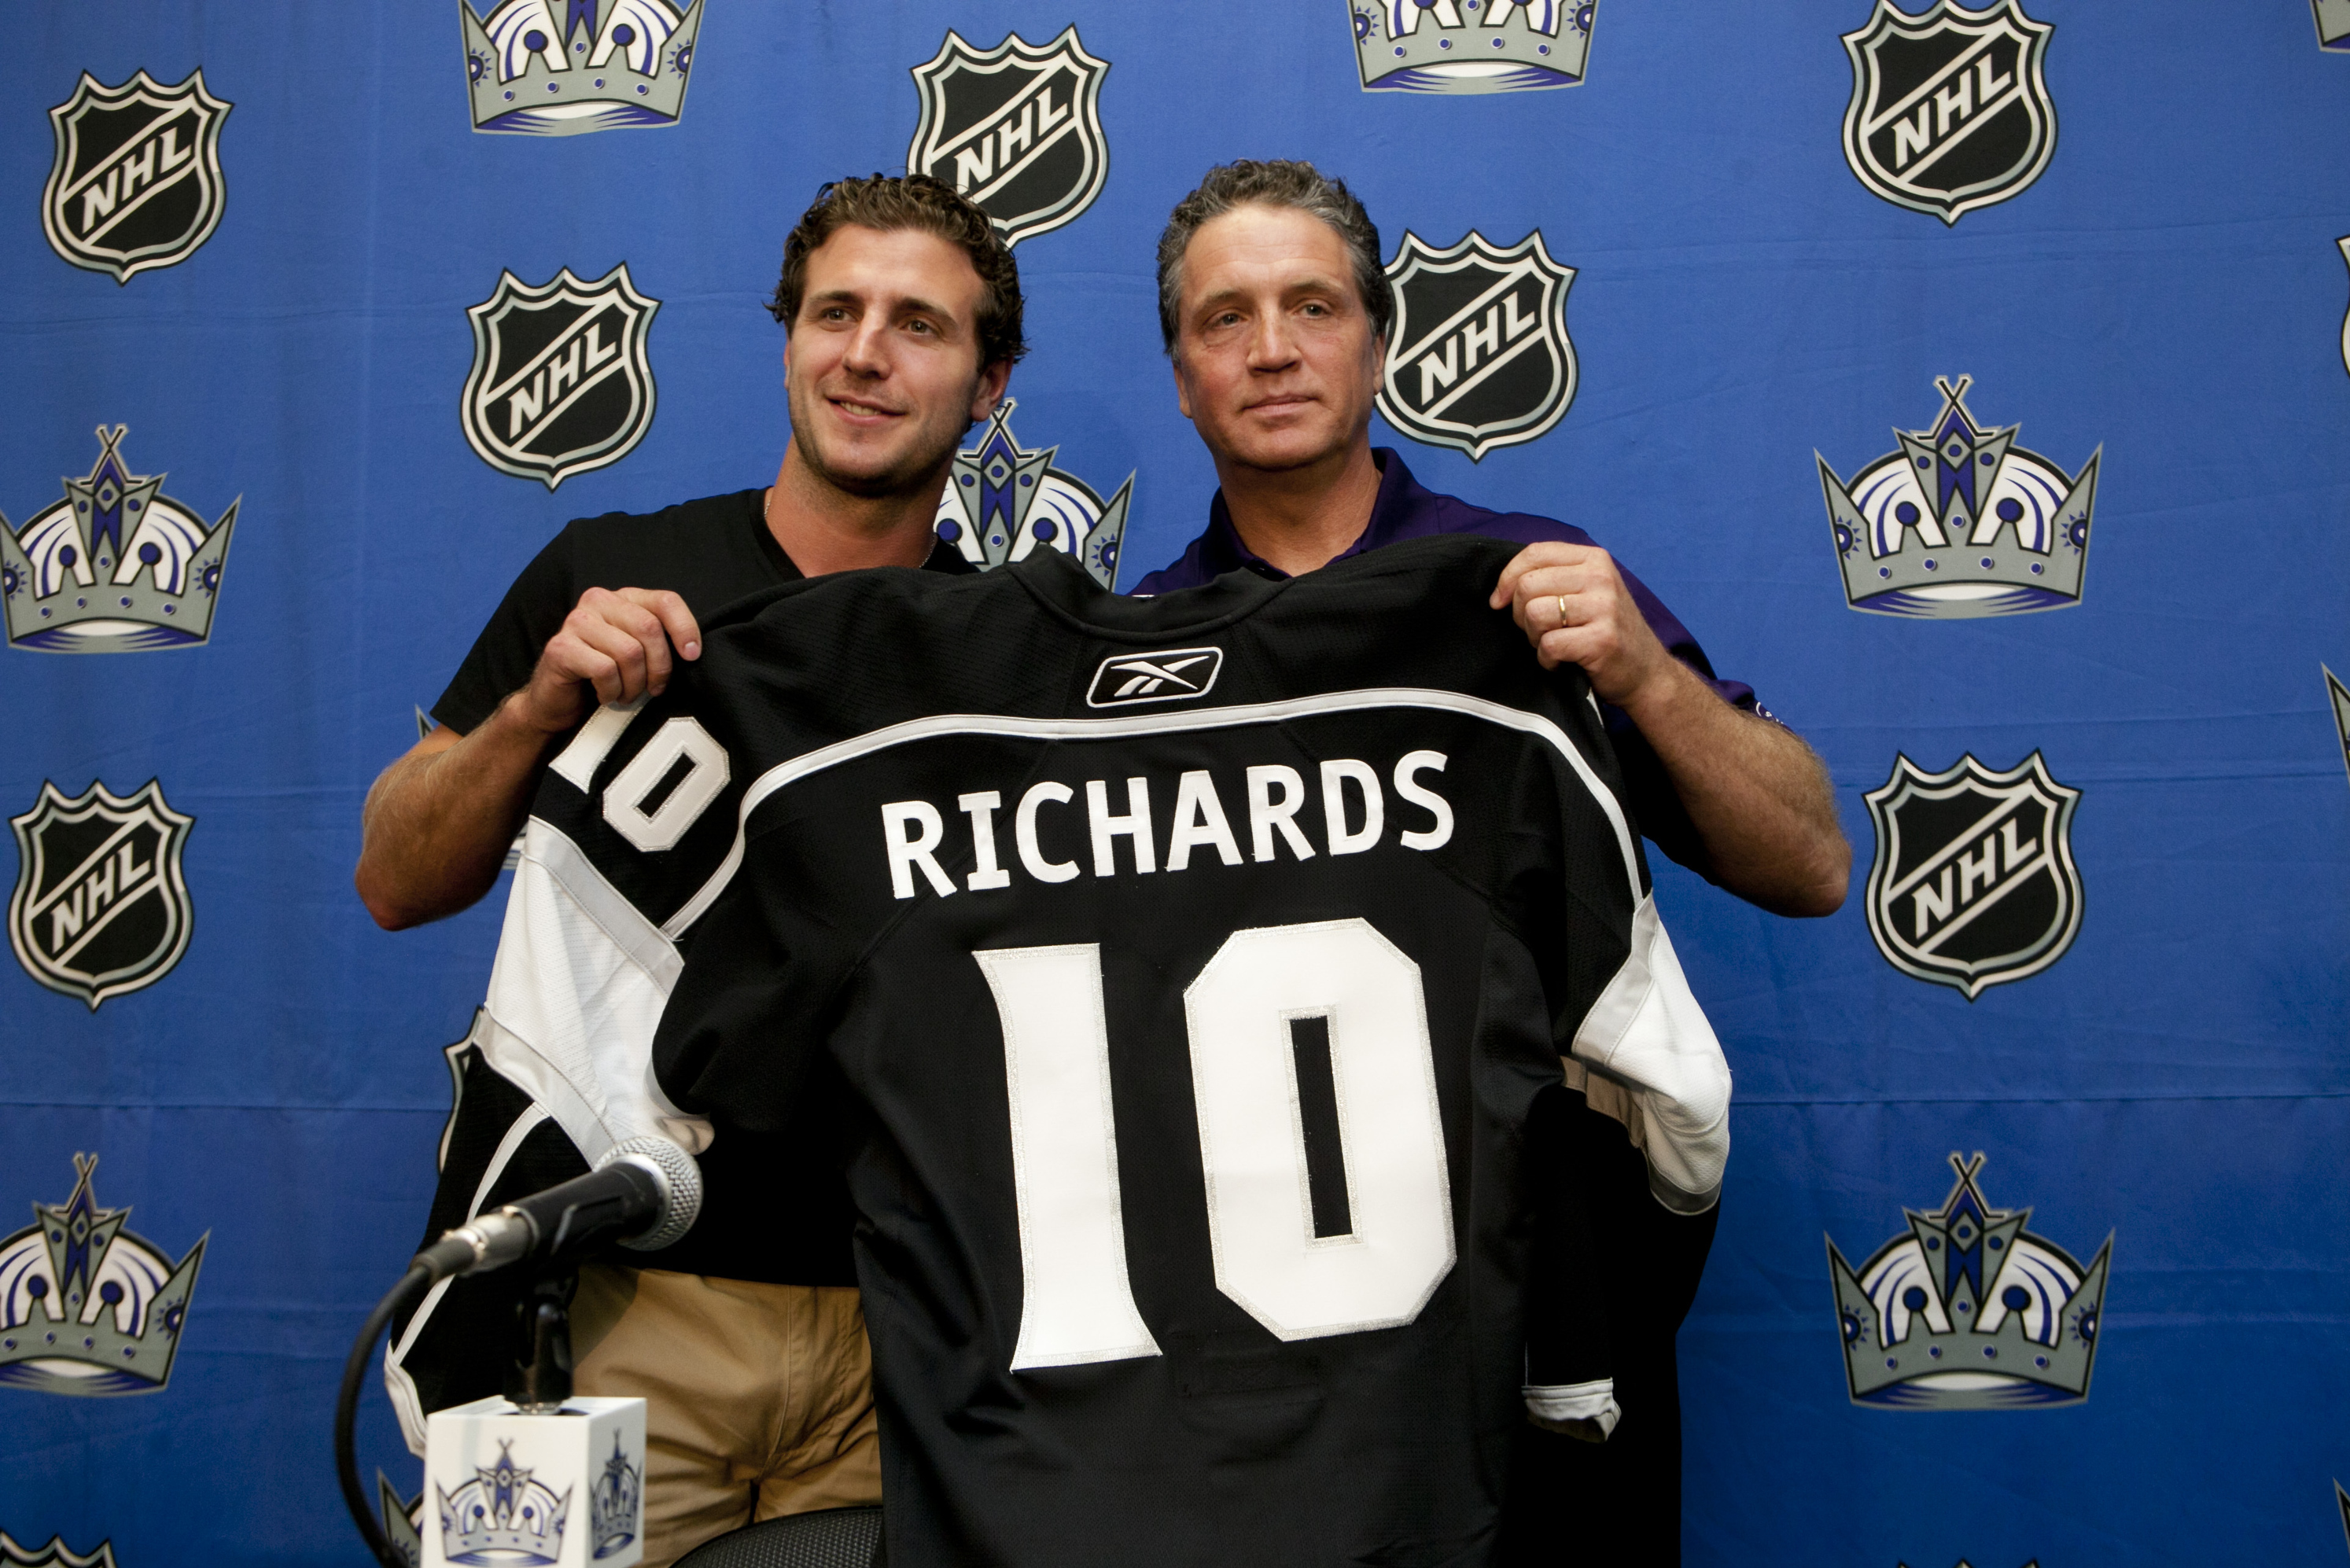 Former Flyers captain Mike Richards arrested for drug possession